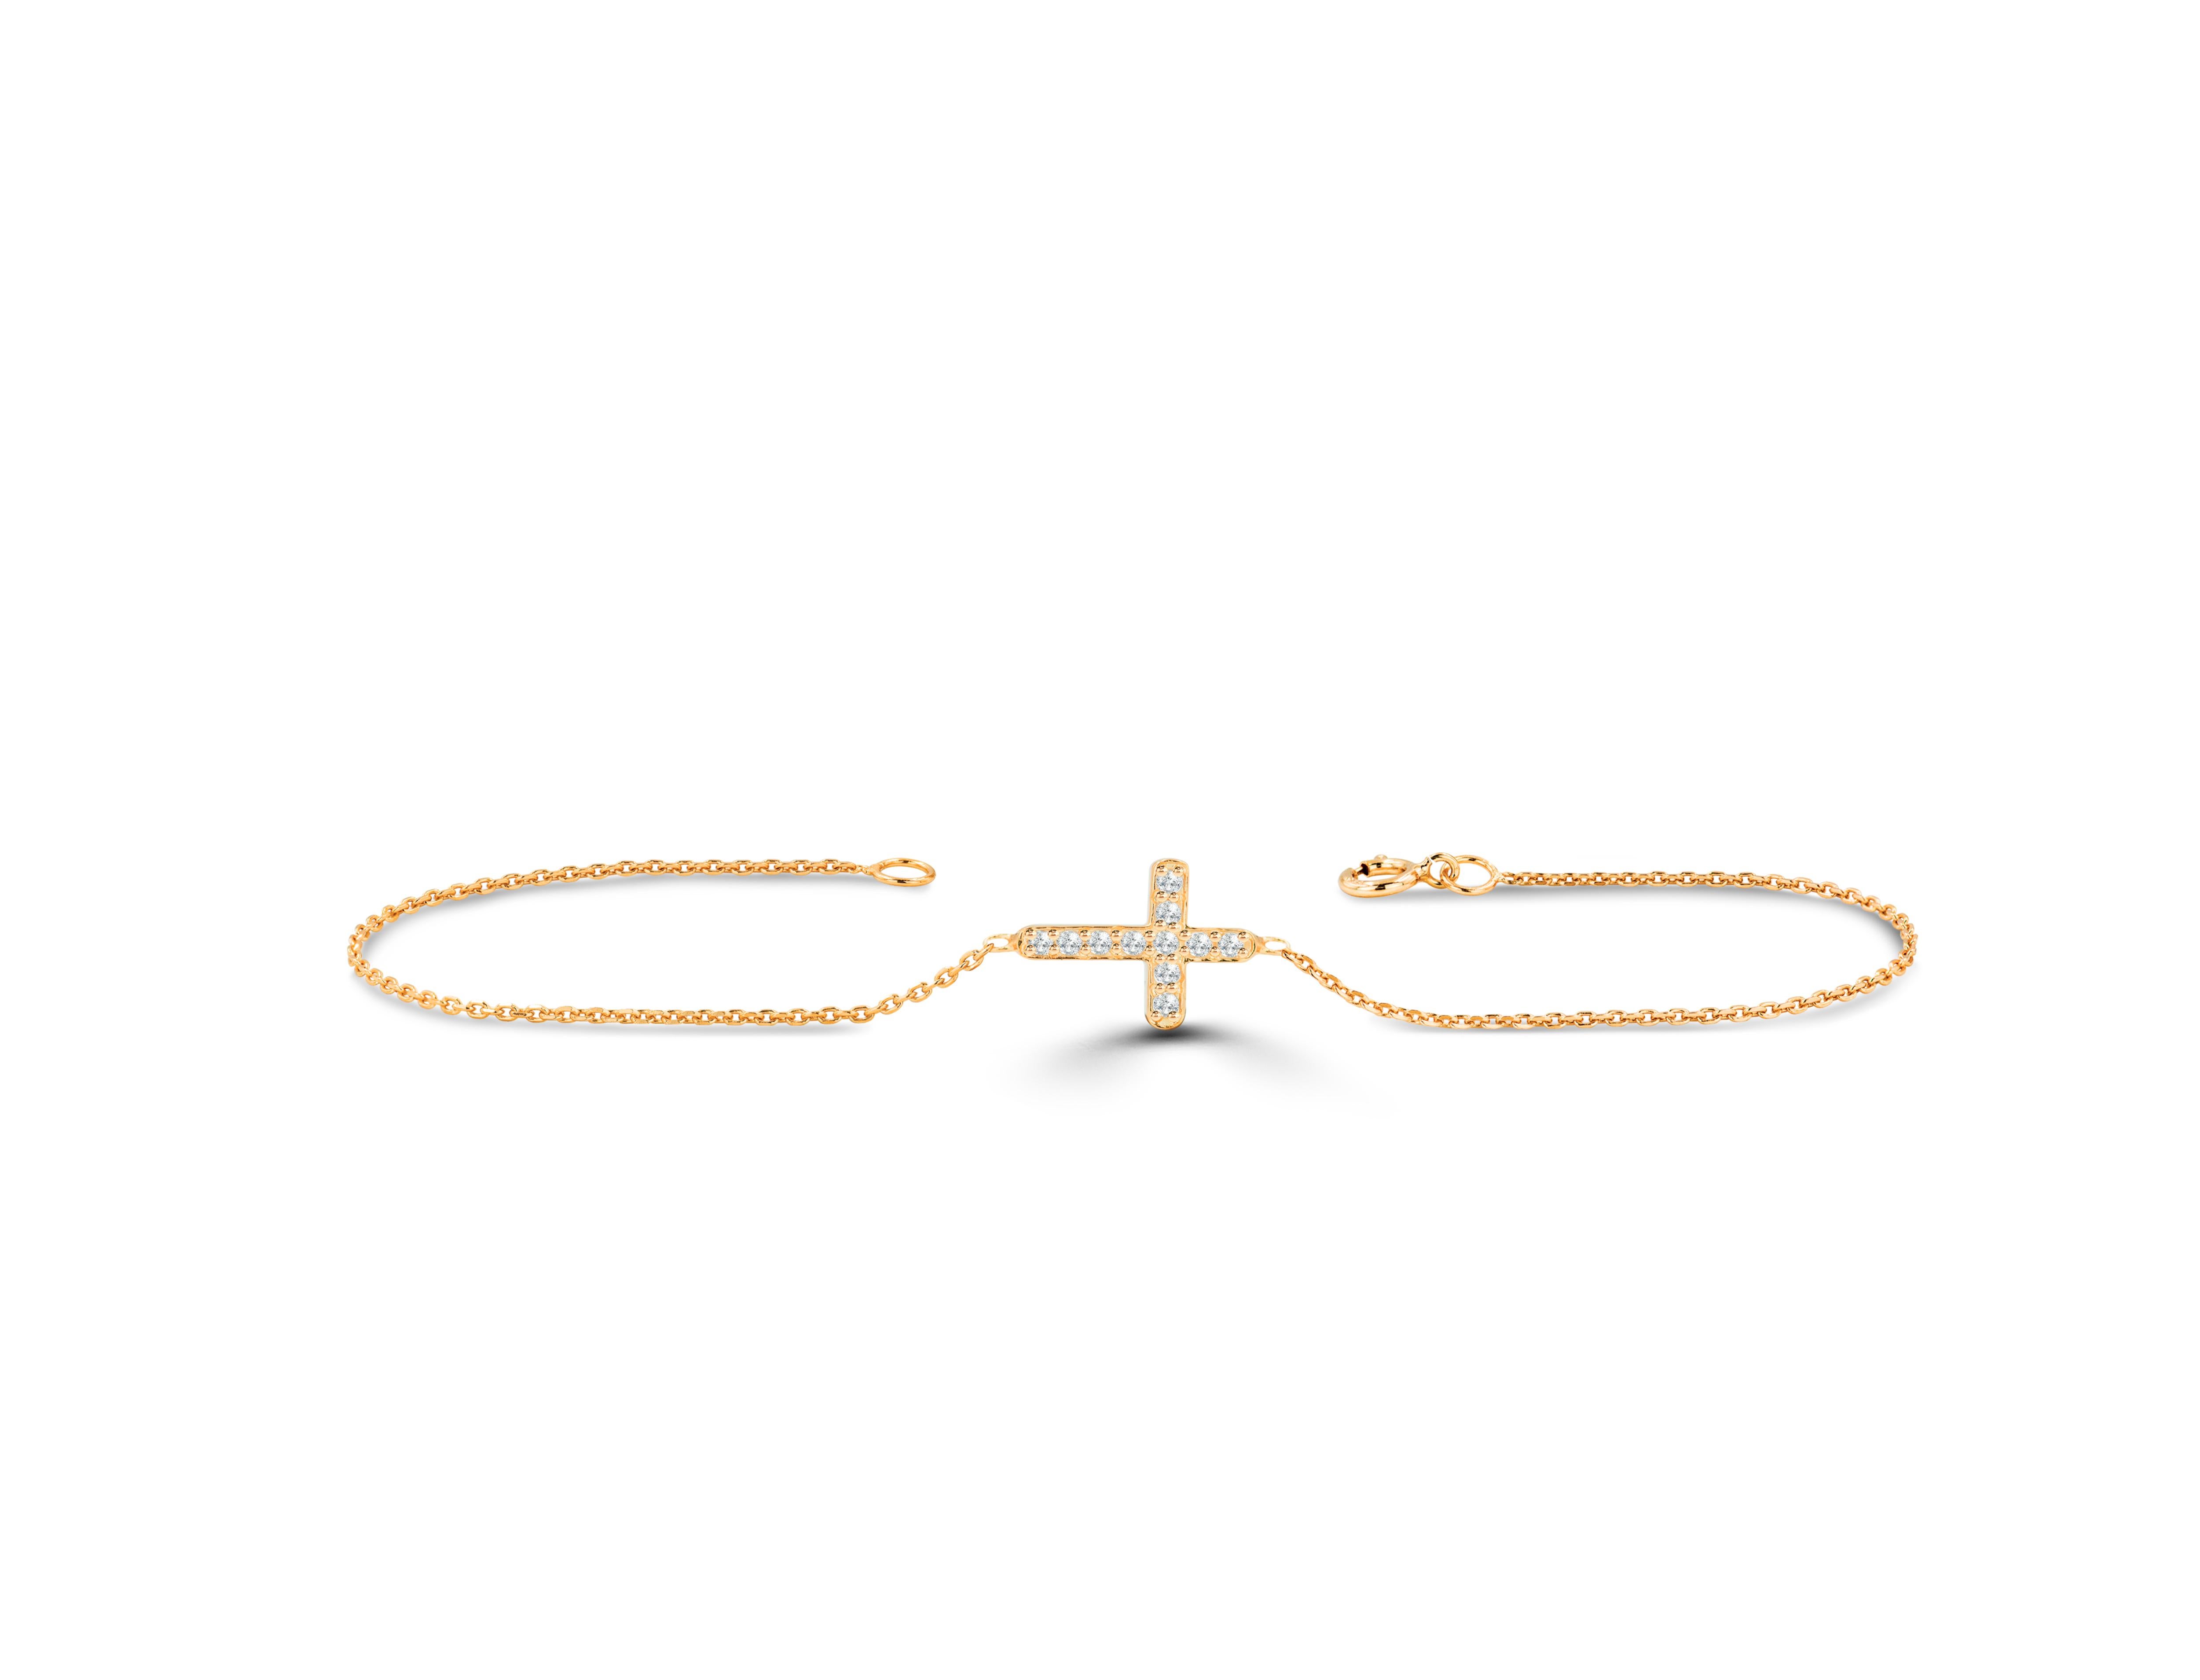 Das 0,08-Karat-Diamant-Sideway-Cross-Armband ist ein perfektes religiöses Armband, mit dem Sie sich beim Tragen wohl und geschützt fühlen. Dieses Armband kann in der Goldfarbe und dem Goldkarat Ihrer Wahl angepasst werden. Tragen Sie dieses Armband